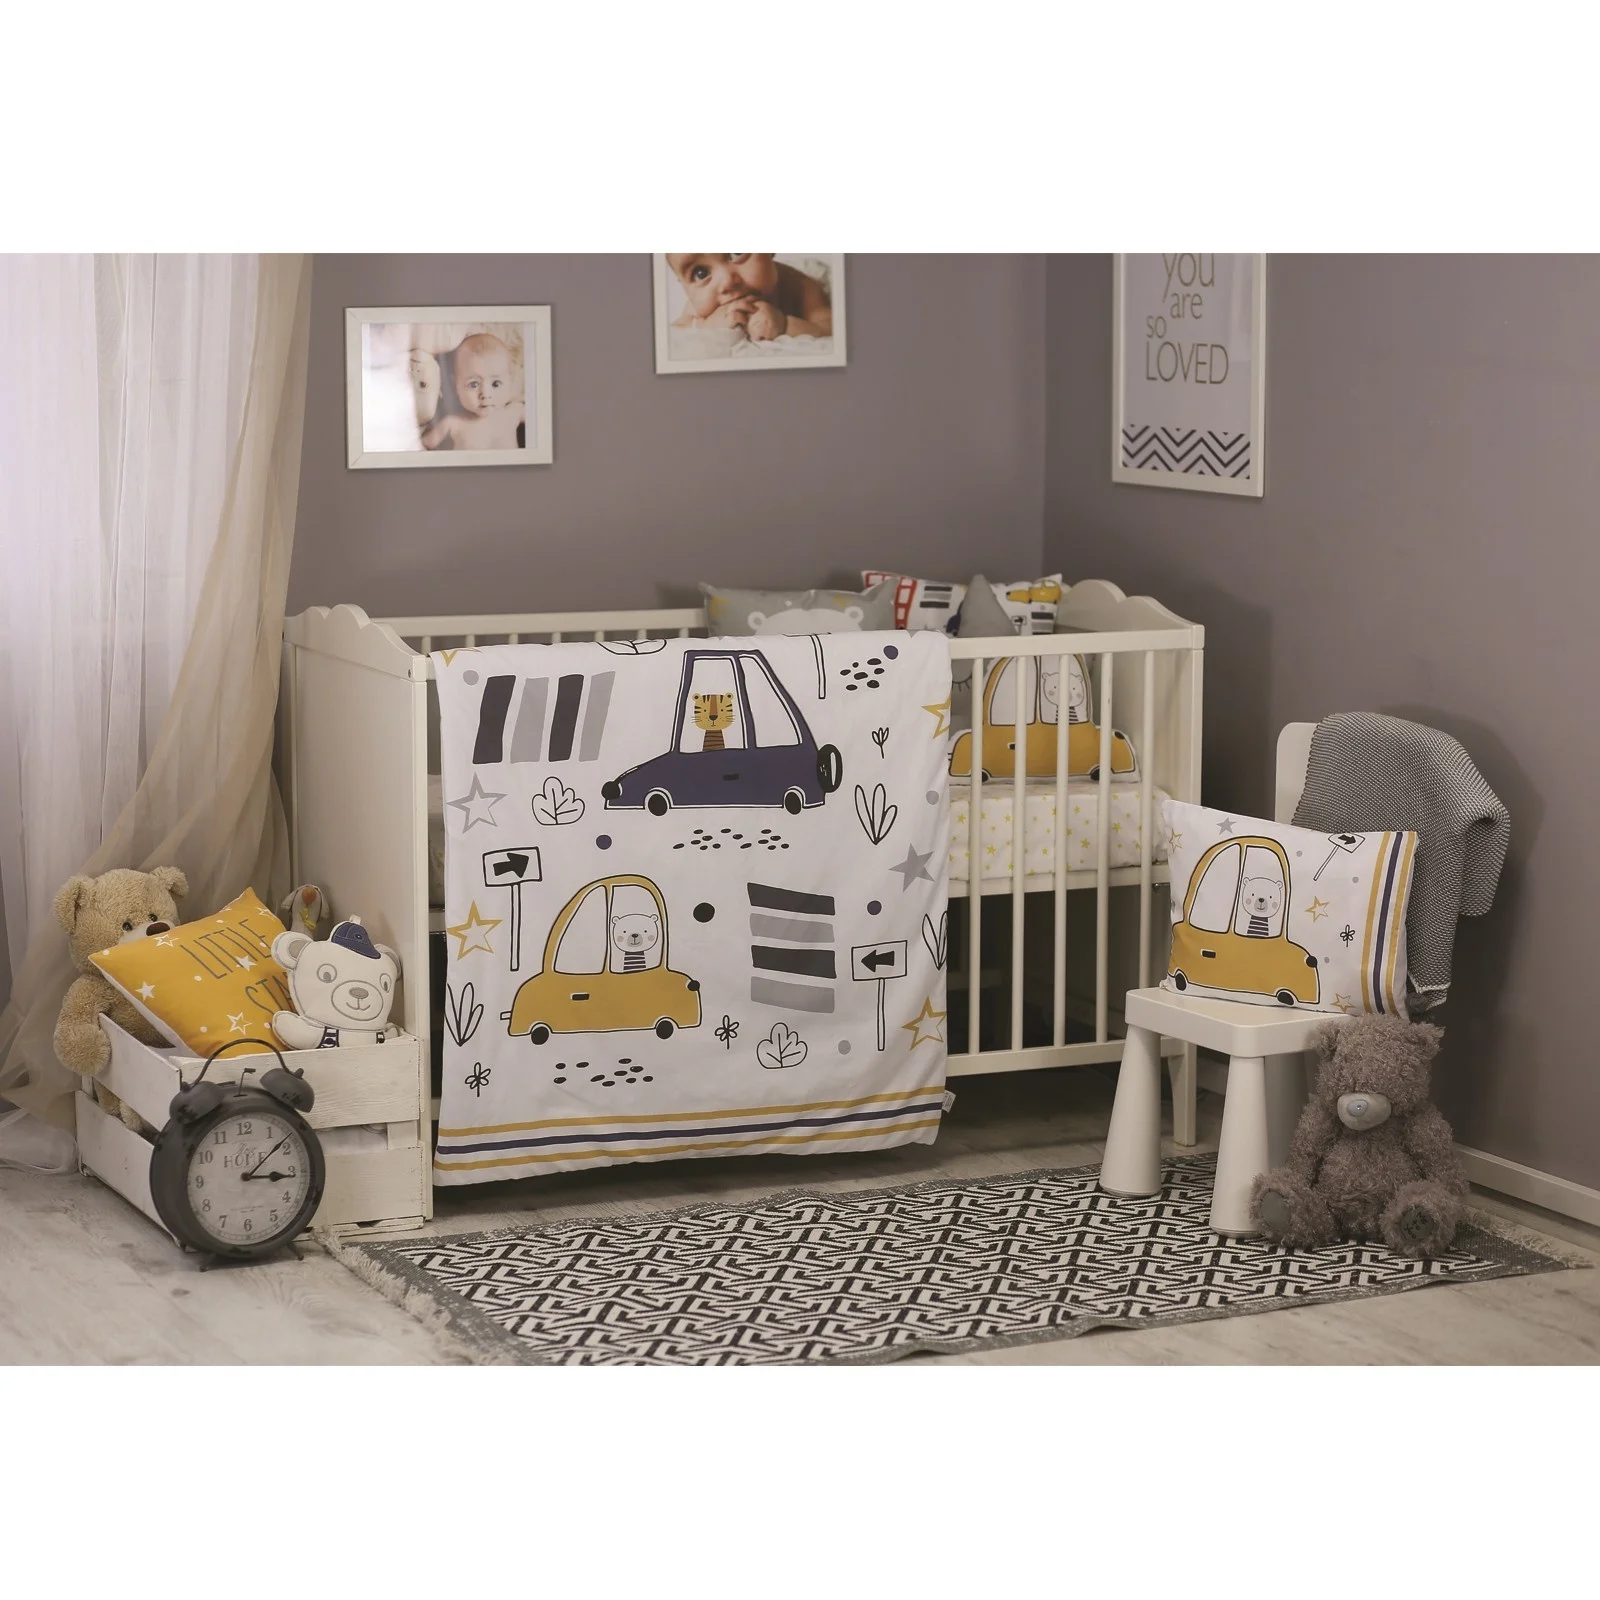 Ebebek Apolena детские машинки кровать пододеяльник& Подушка Чехол комплект из 2 предметов